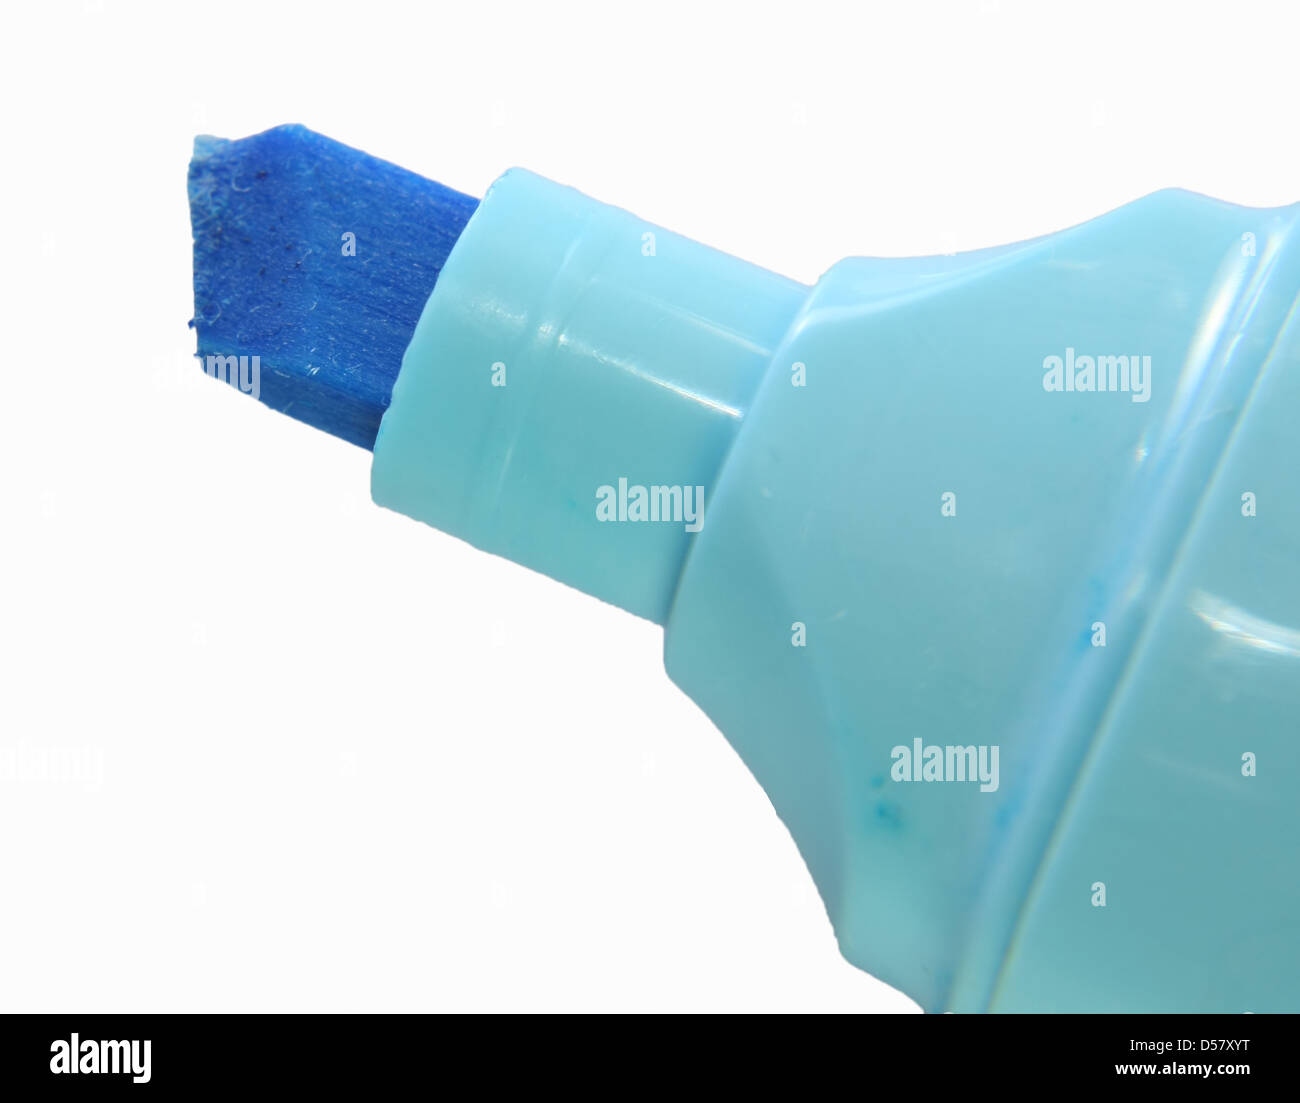 Resaltador azul punta utilizado para resaltar las palabras escritas  Fotografía de stock - Alamy